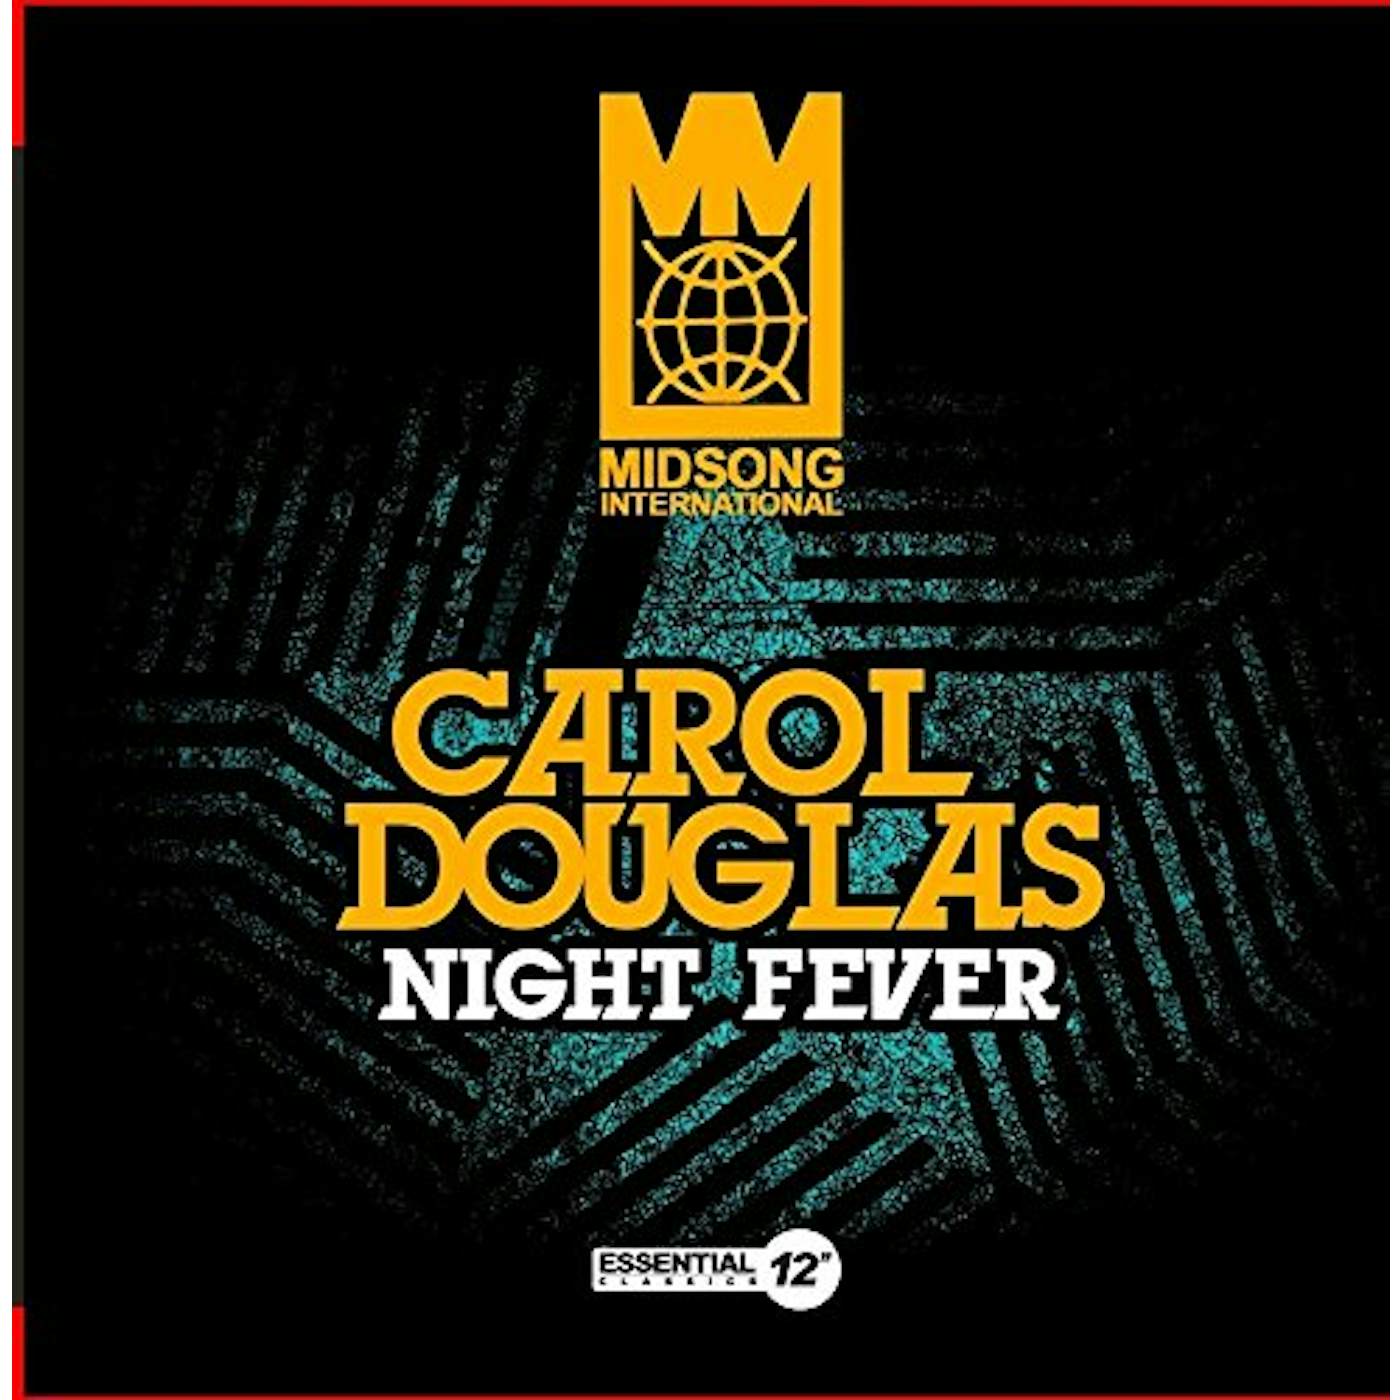 Carol Douglas NIGHT FEVER CD